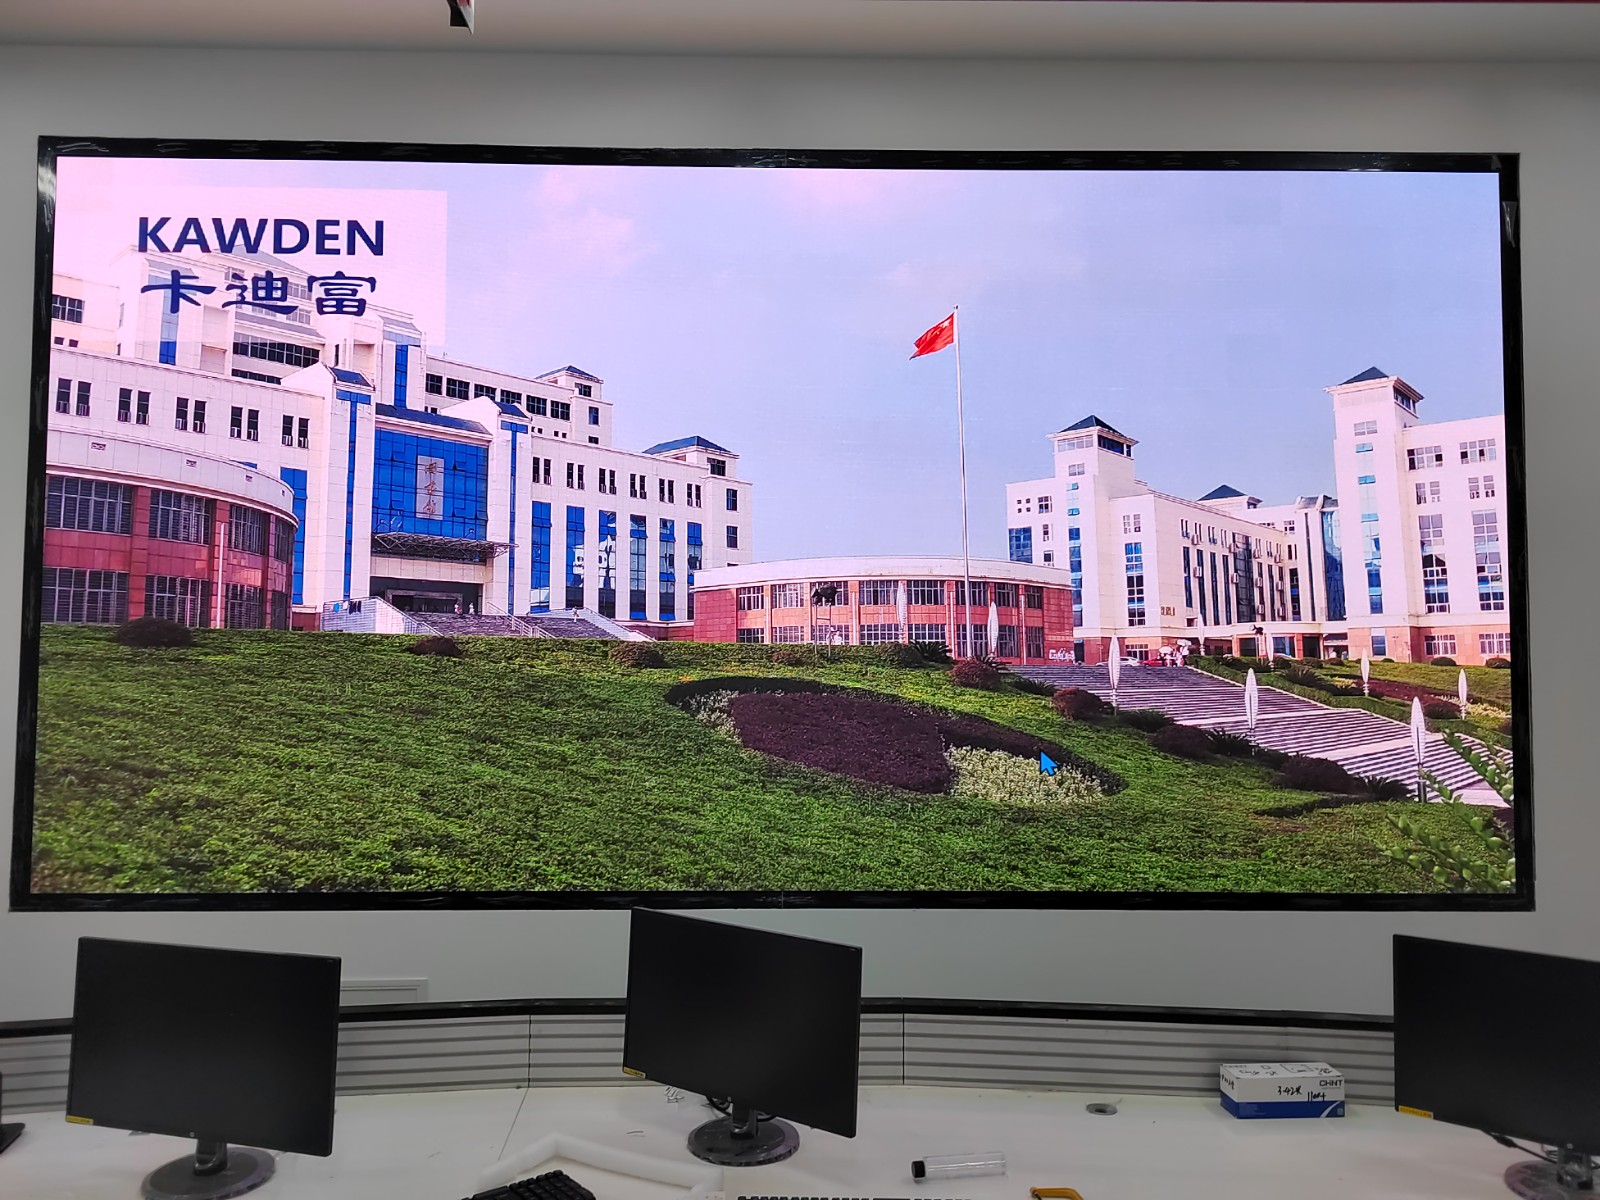 杭州市滨江区某机电职业技术学院项目P1.25LED显示屏成功展示